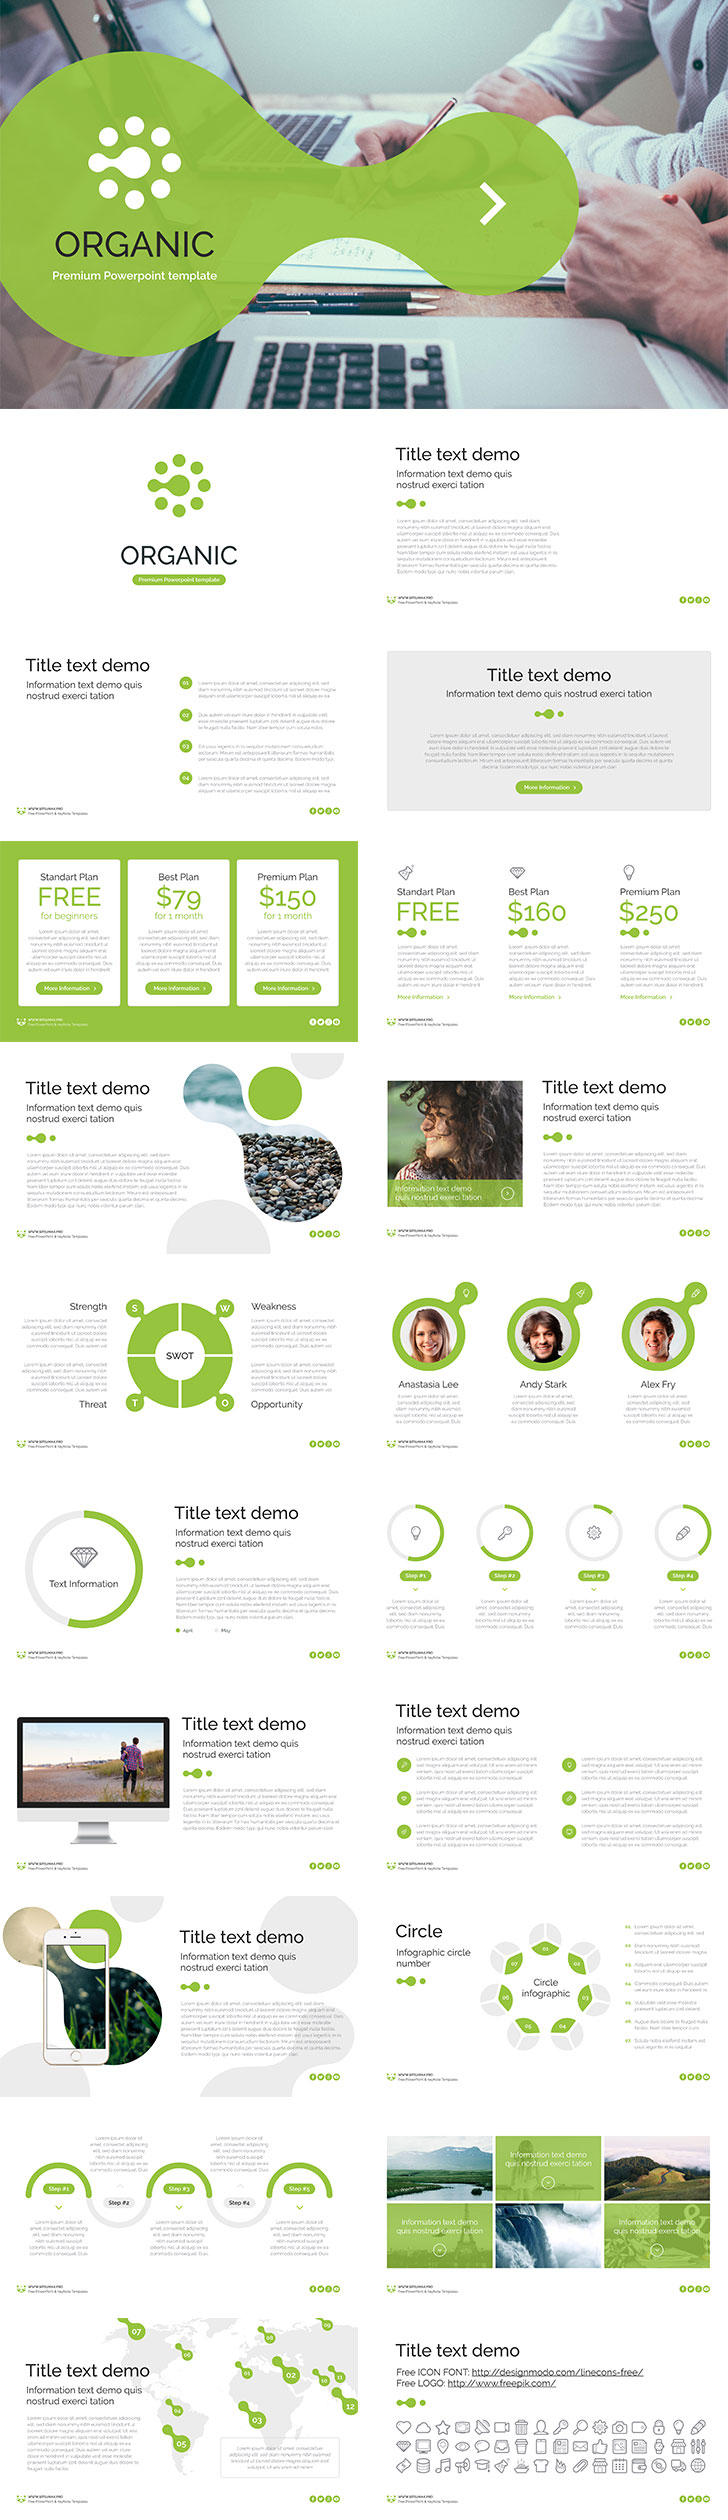 自然或原生态主题免费PPT模板 Free PowerPoint template Organic插图